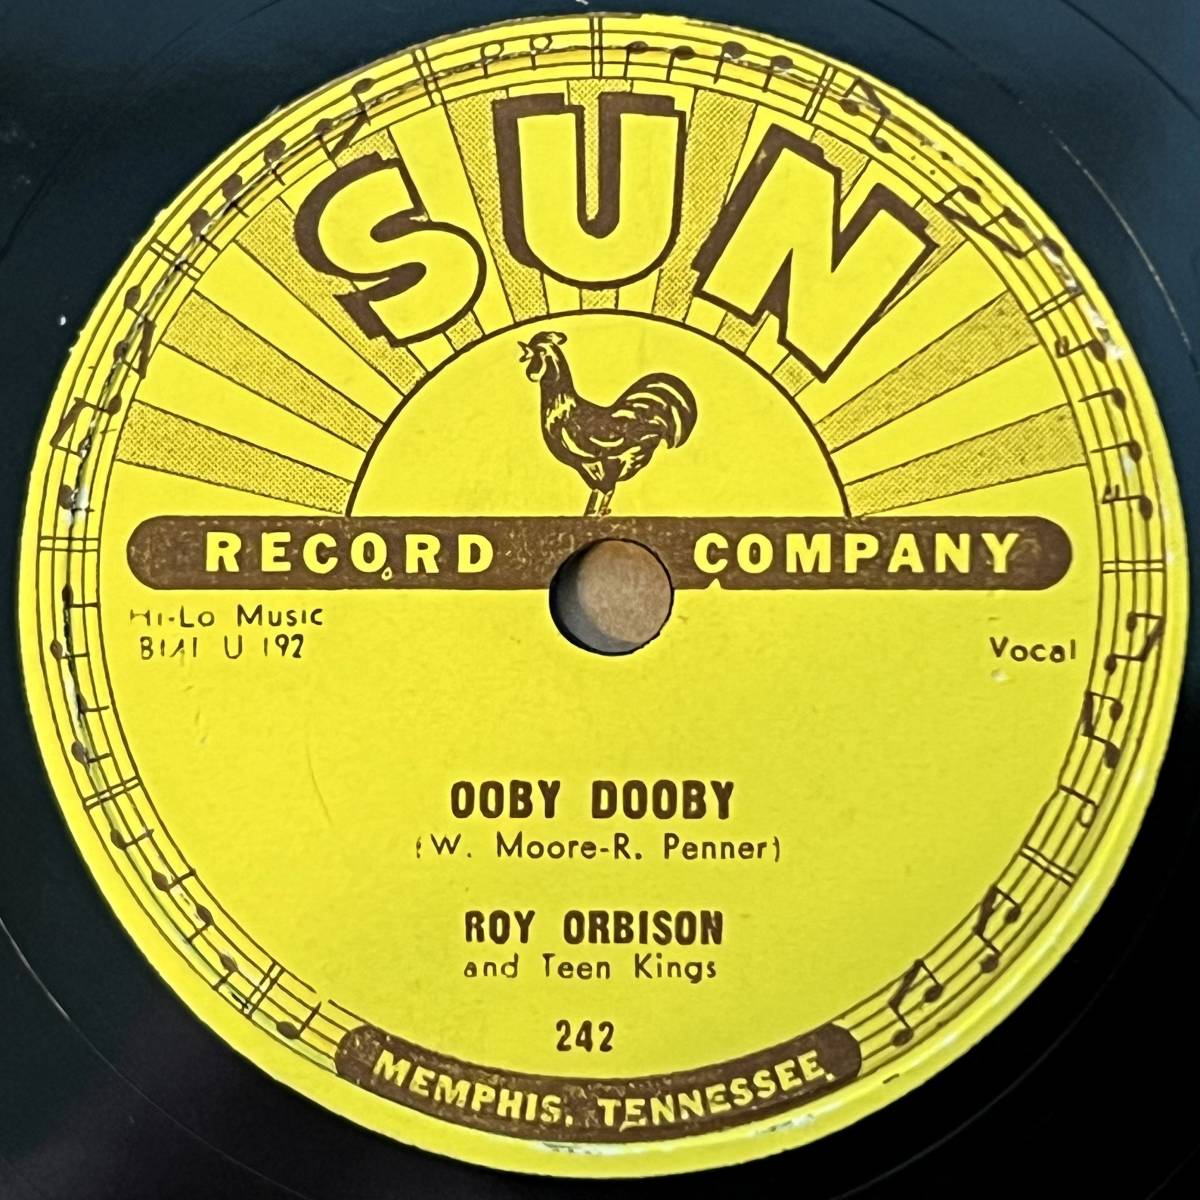 ROY ORBISON SUN Ooby Dooby/ Go! Go! Go! 美盤!!!!